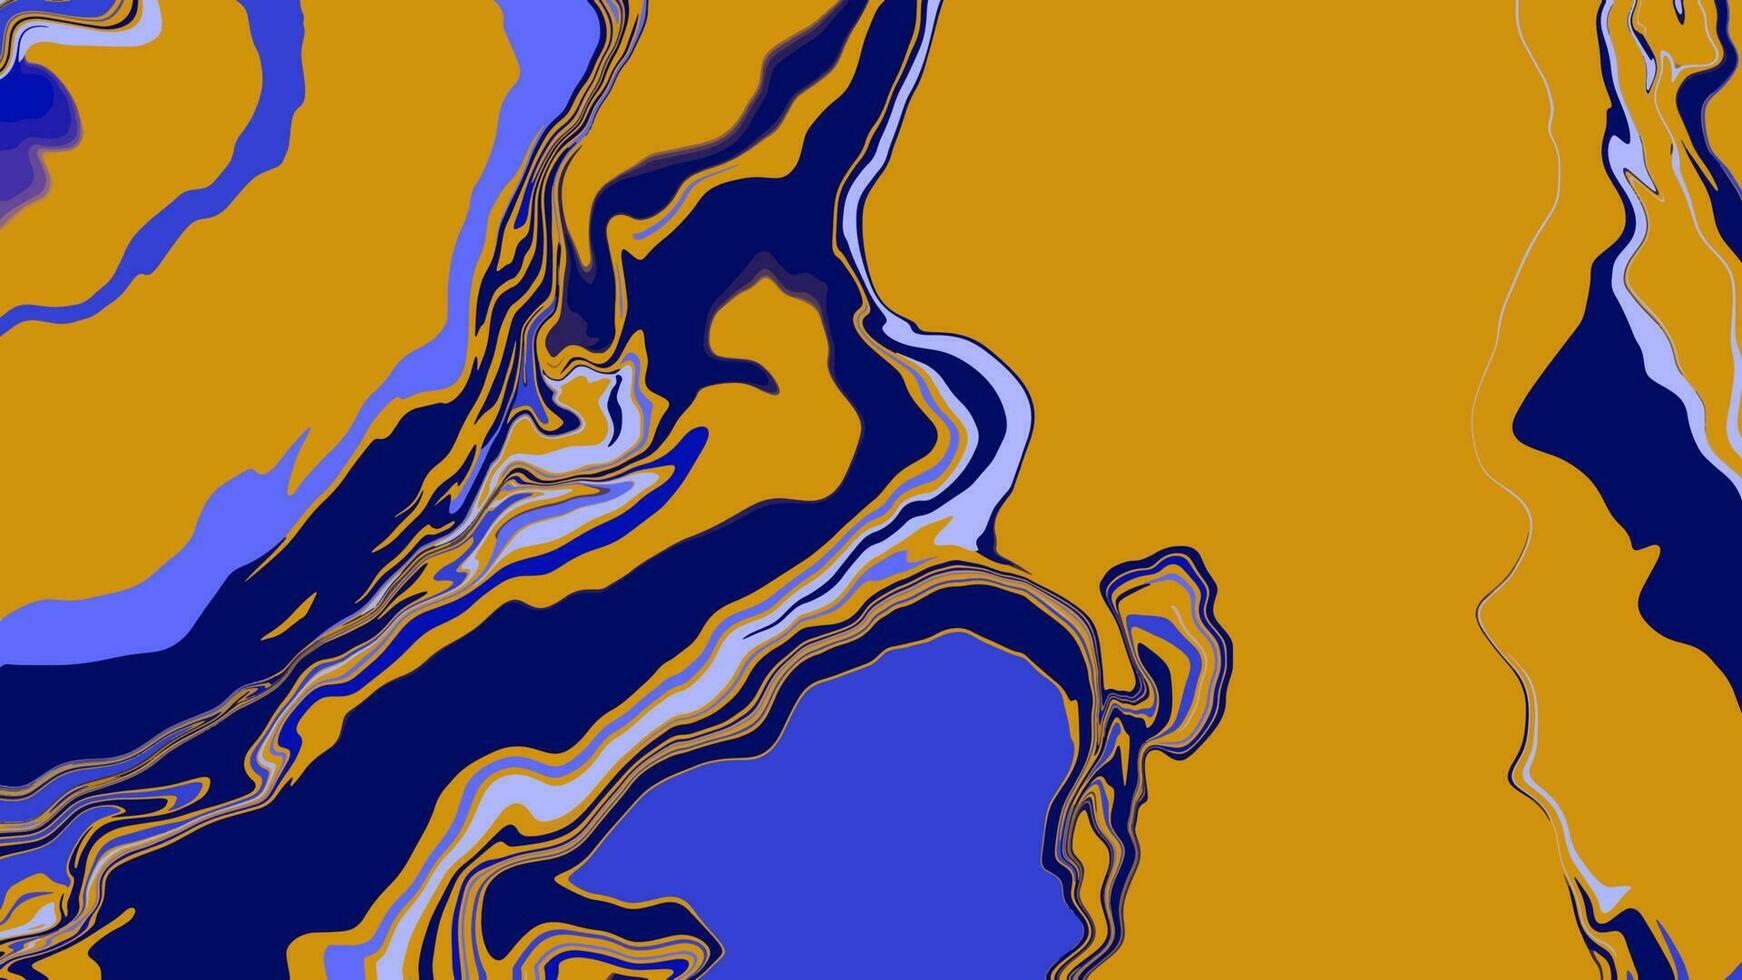 bakgrund med marmor textur. abstrakt målning blanda fläckar. gul och blå flytande måla den där flöden. vektor